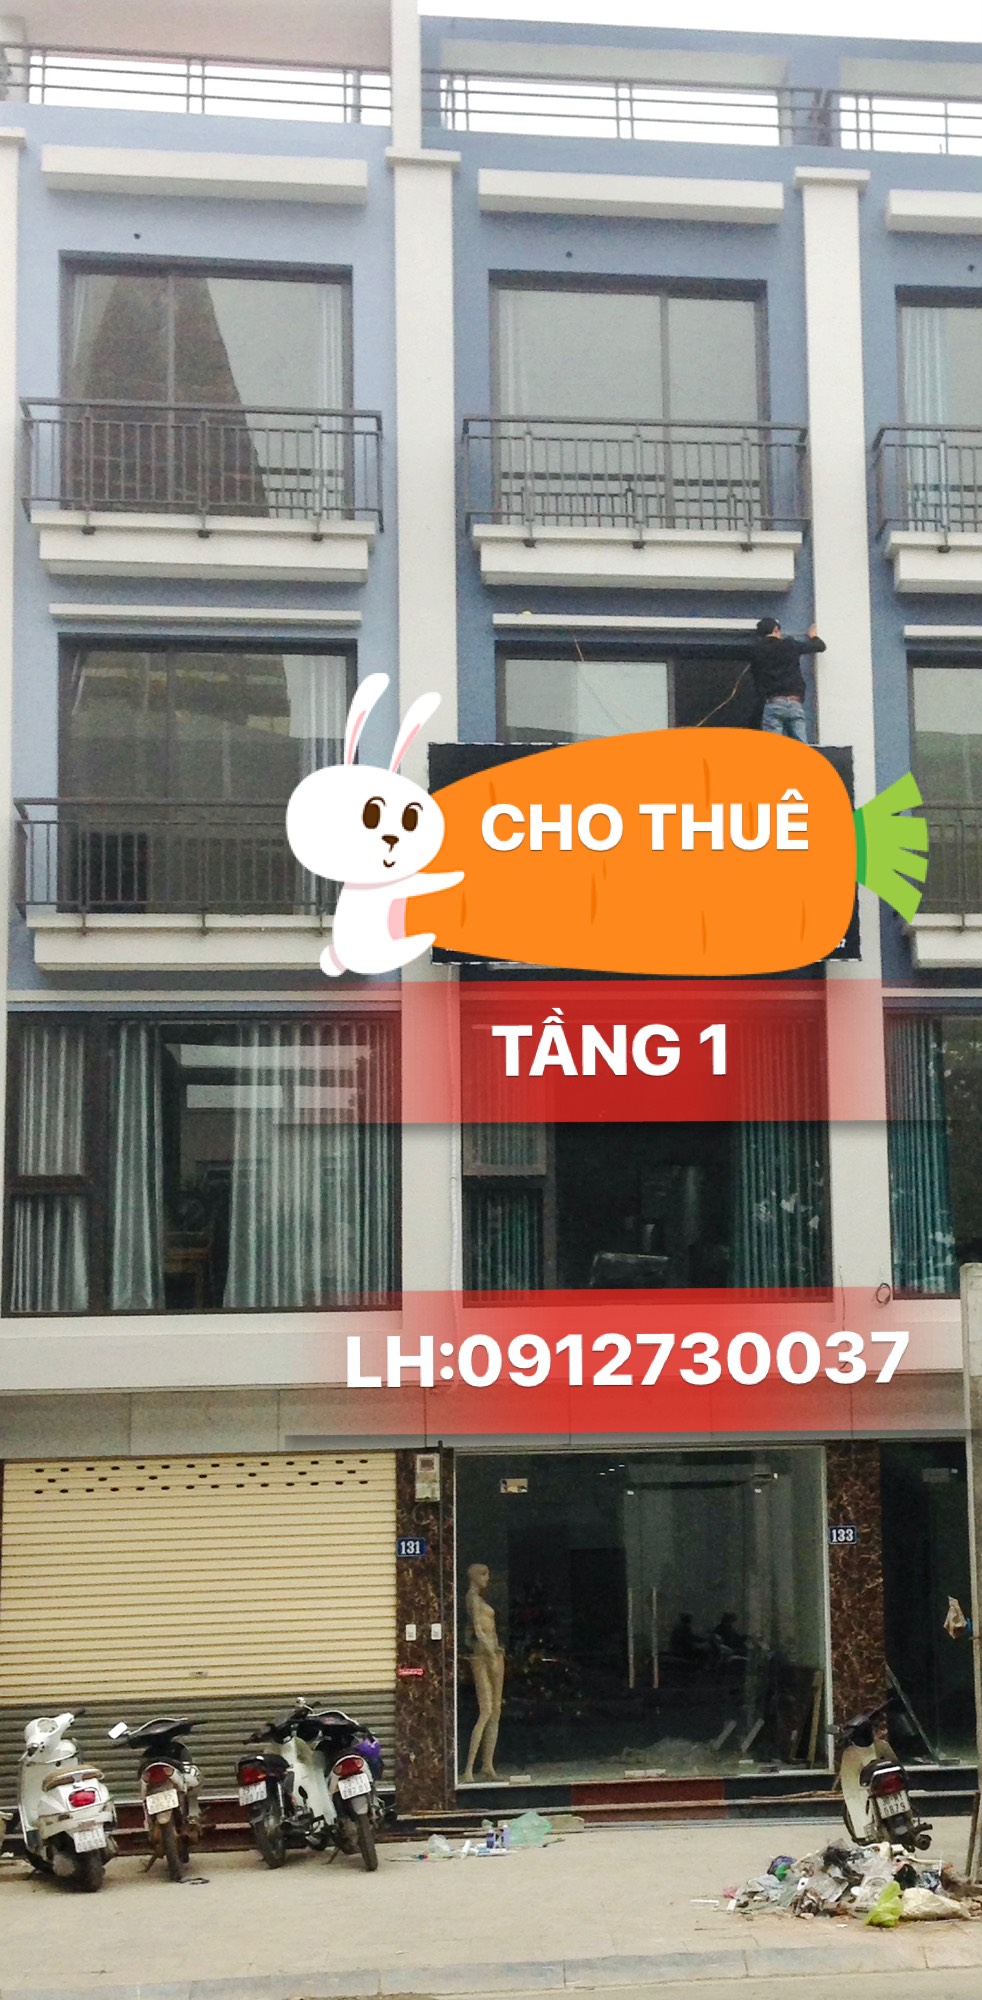 Chính chủ cho thuê mặt bằng tầng 1 tại đường Quang Trung, Hà Đông, Hà Nội.